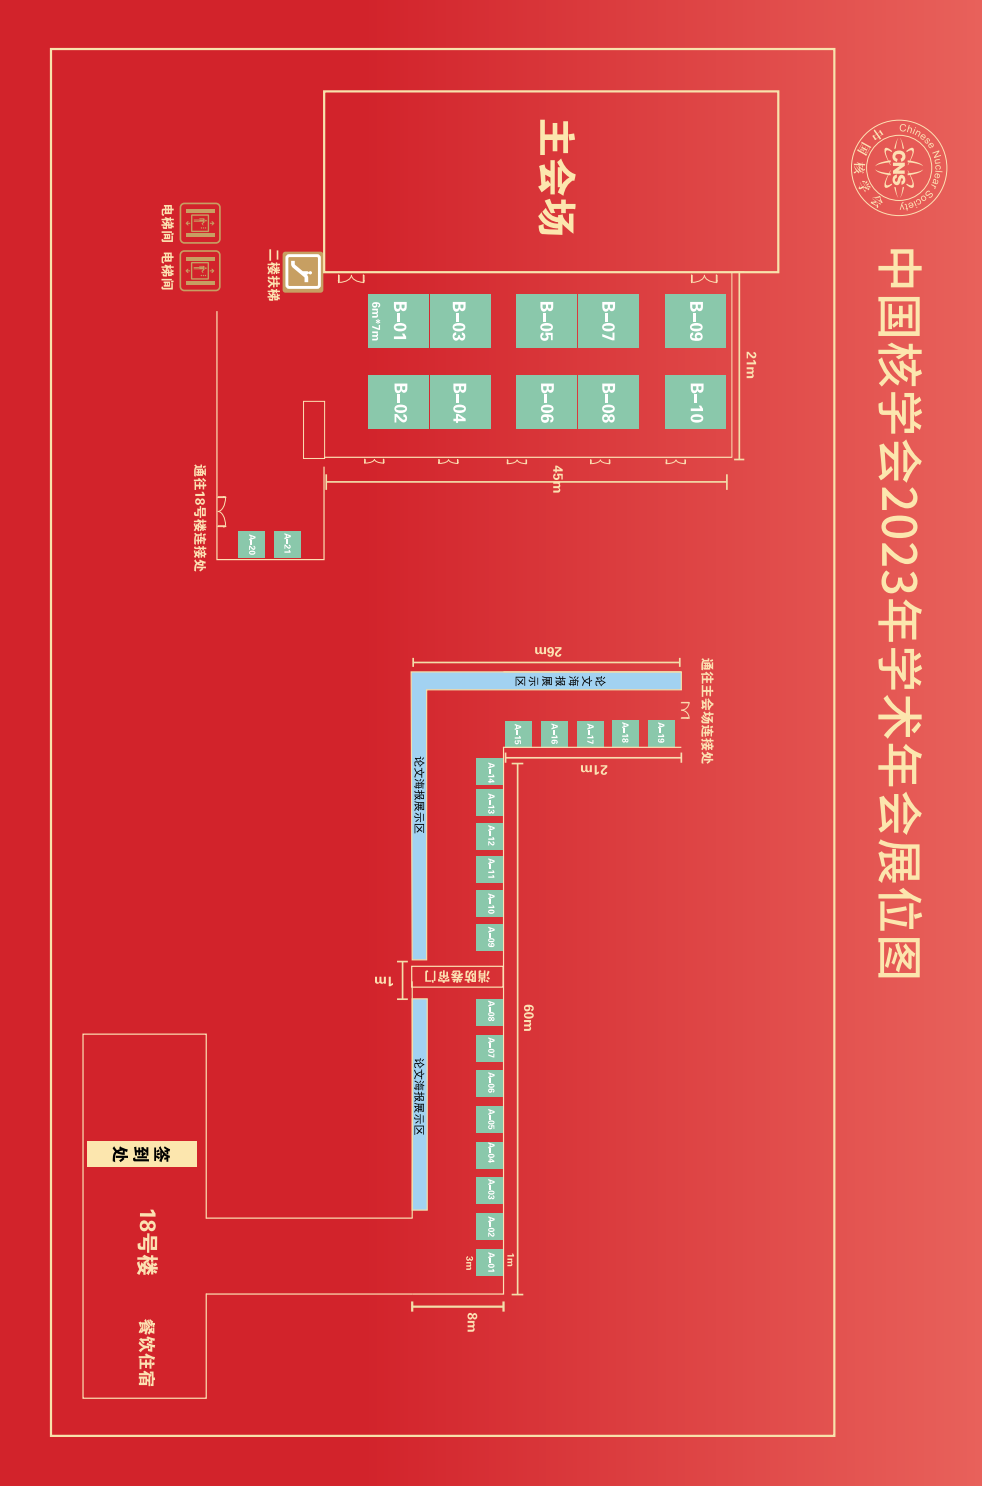 20230811-中国核学会2023年学术年会招展手册V5_03.png